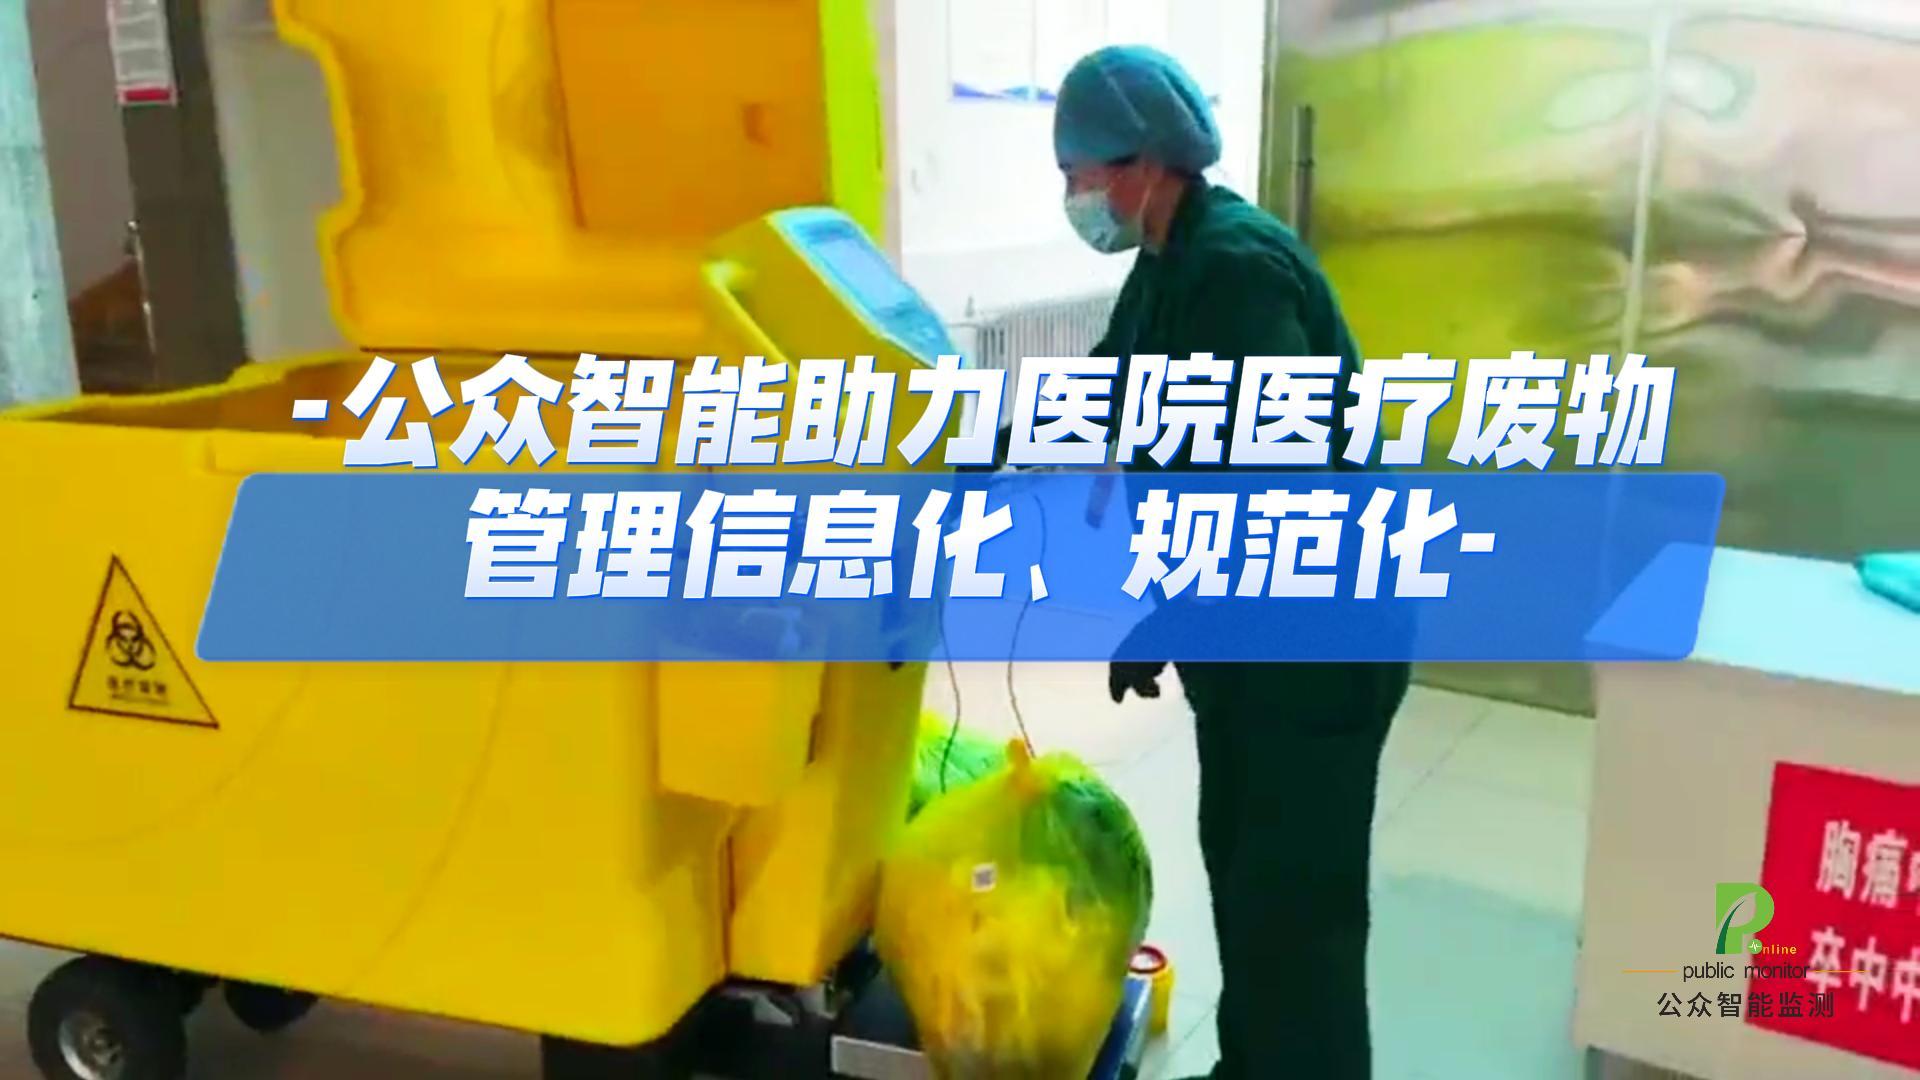 公众智能助力医院医疗废物管理信息化、规范化#陕西公众智能监测#陕西公众智能科技 